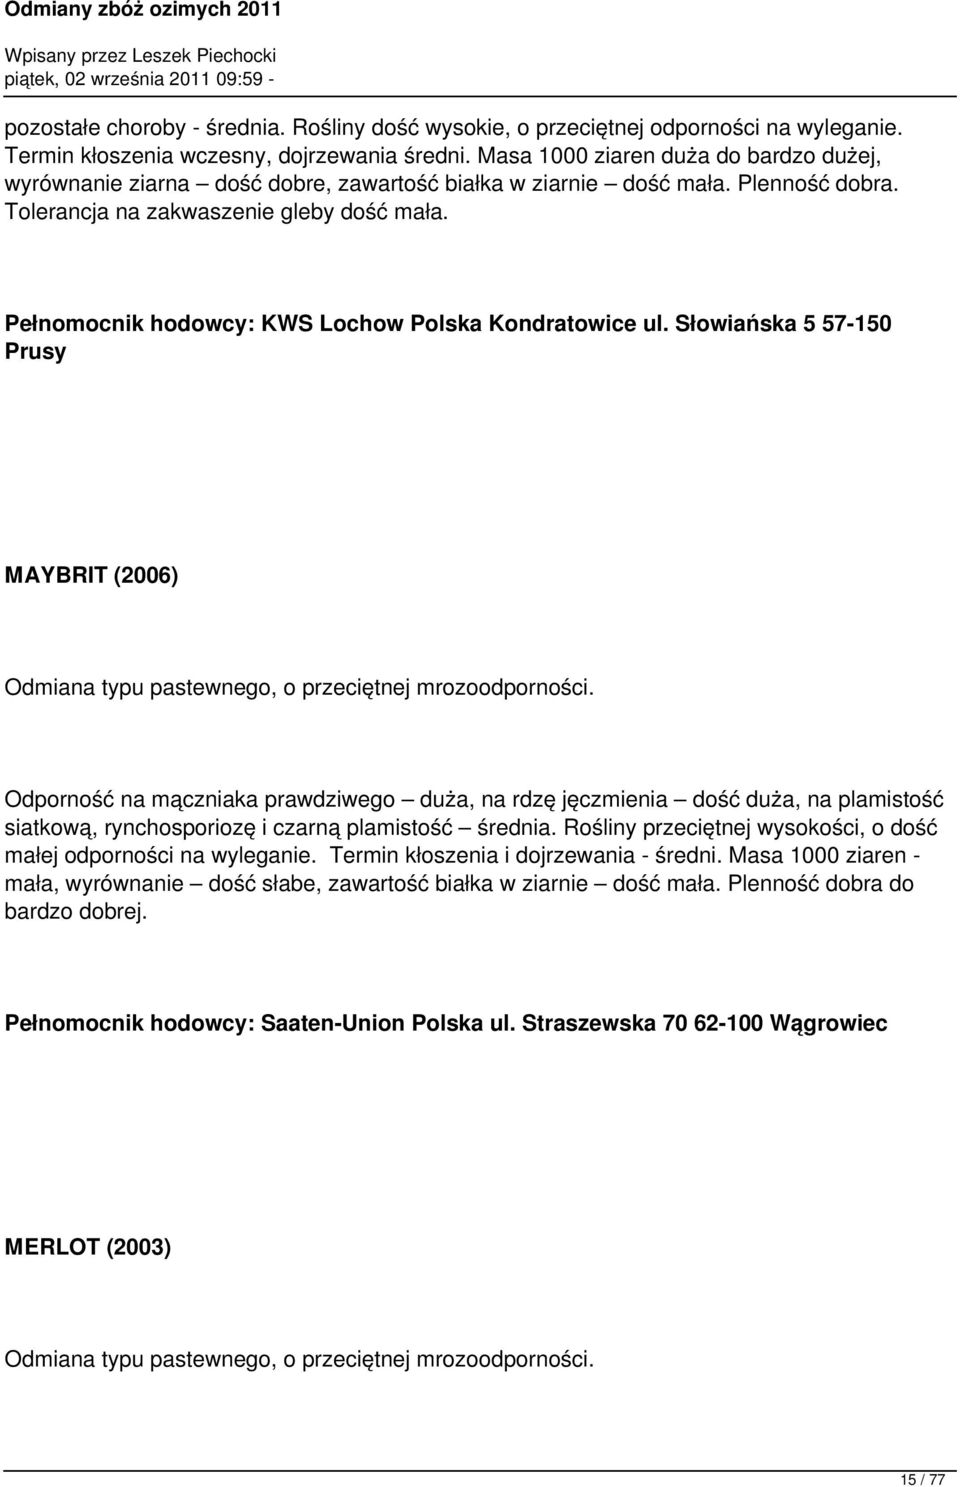 Pełnomocnik hodowcy: KWS Lochow Polska Kondratowice ul. Słowiańska 5 57-150 Prusy MAYBRIT (2006) Odmiana typu pastewnego, o przeciętnej mrozoodporności.